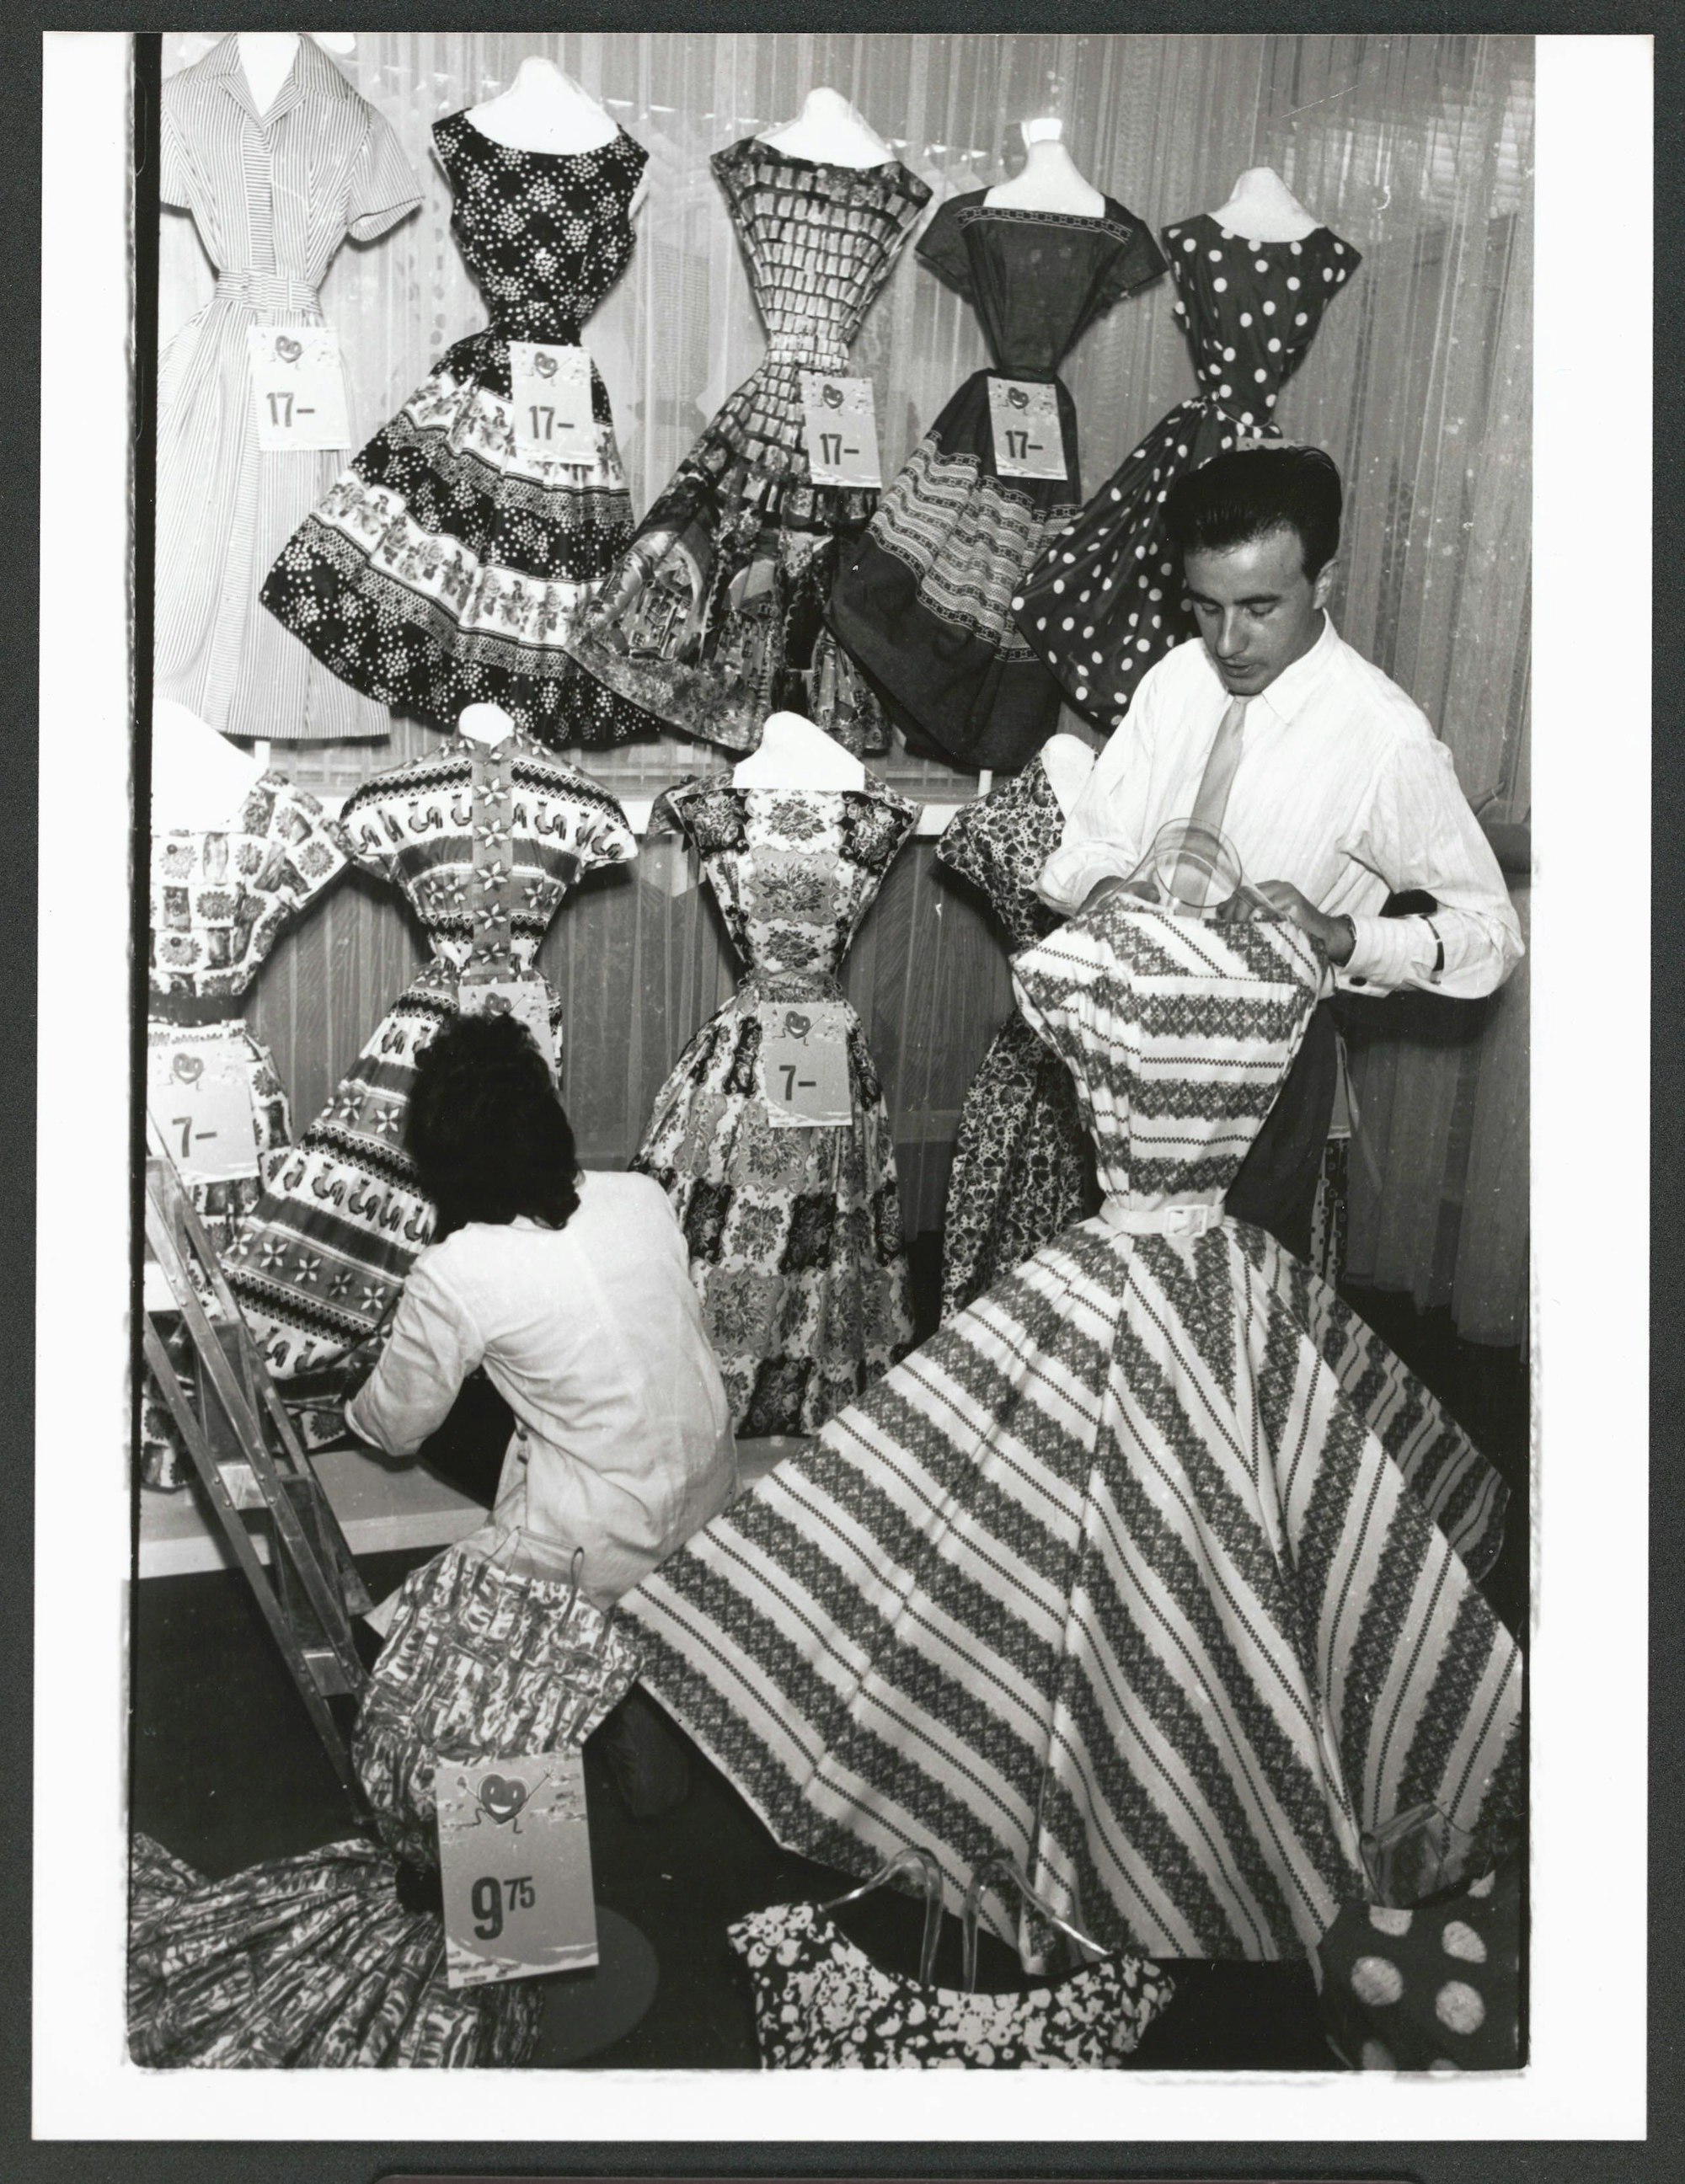 Sommerkleider ab 7 Mark im Schlussverkauf 1958.